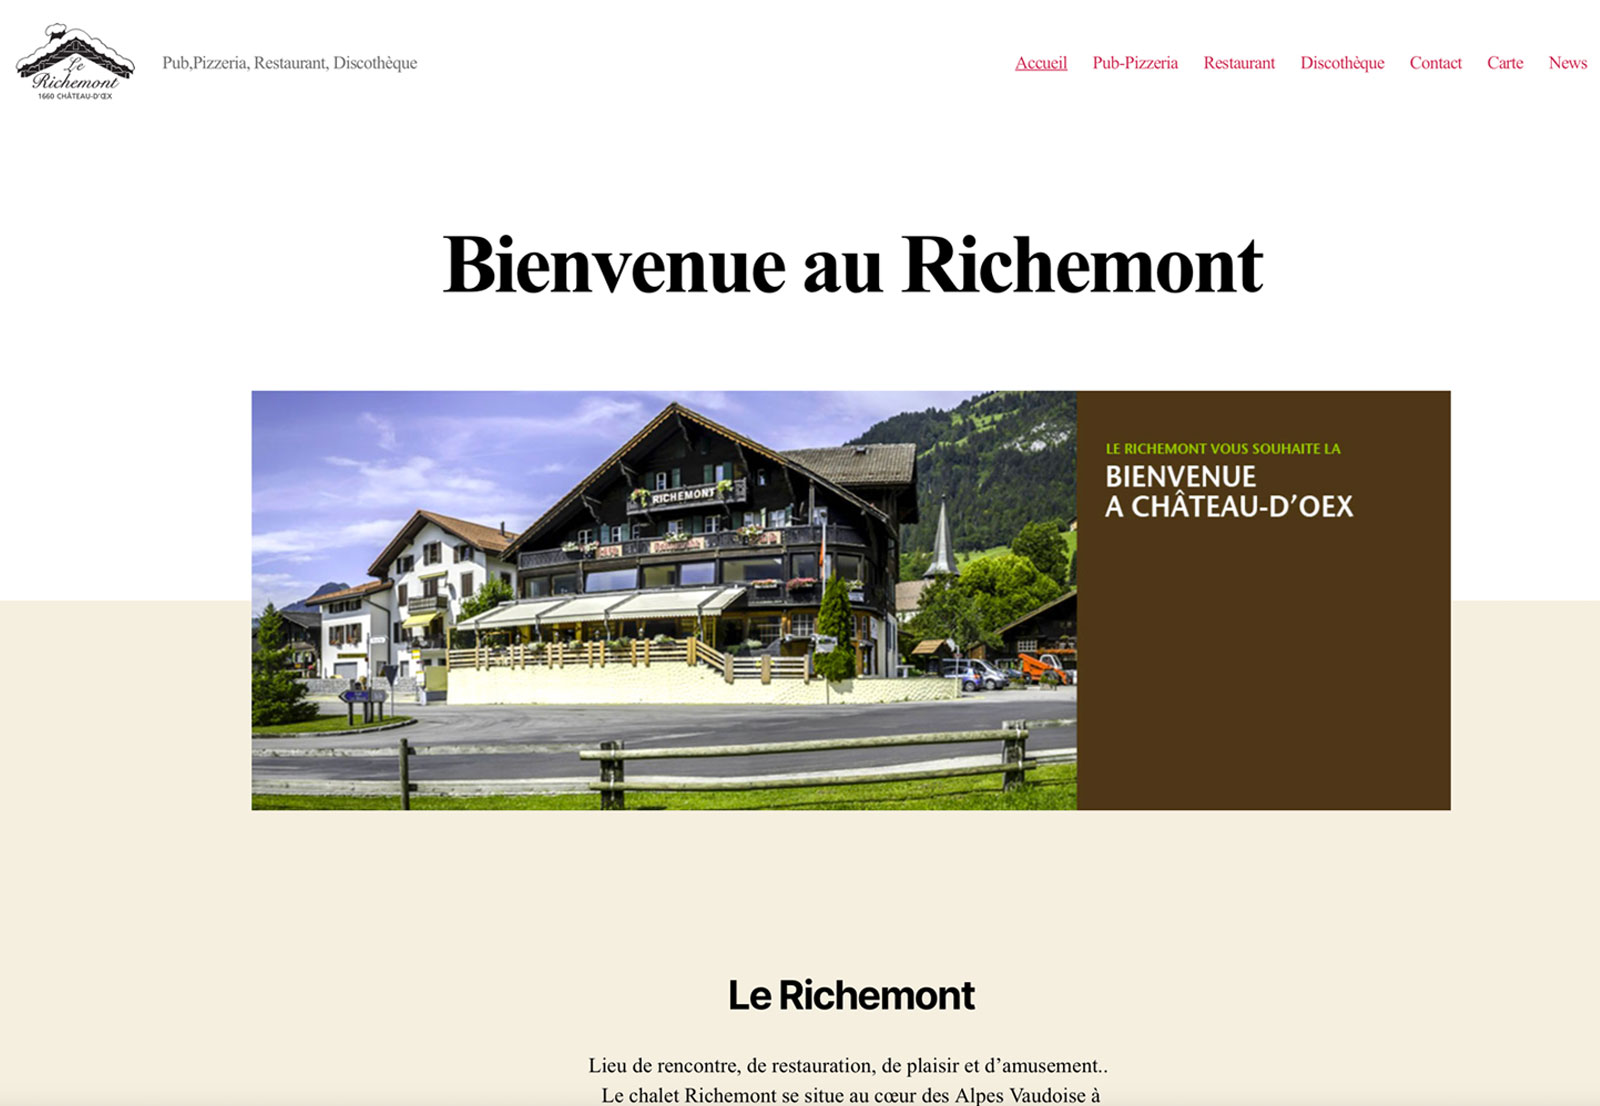 Le Richemont